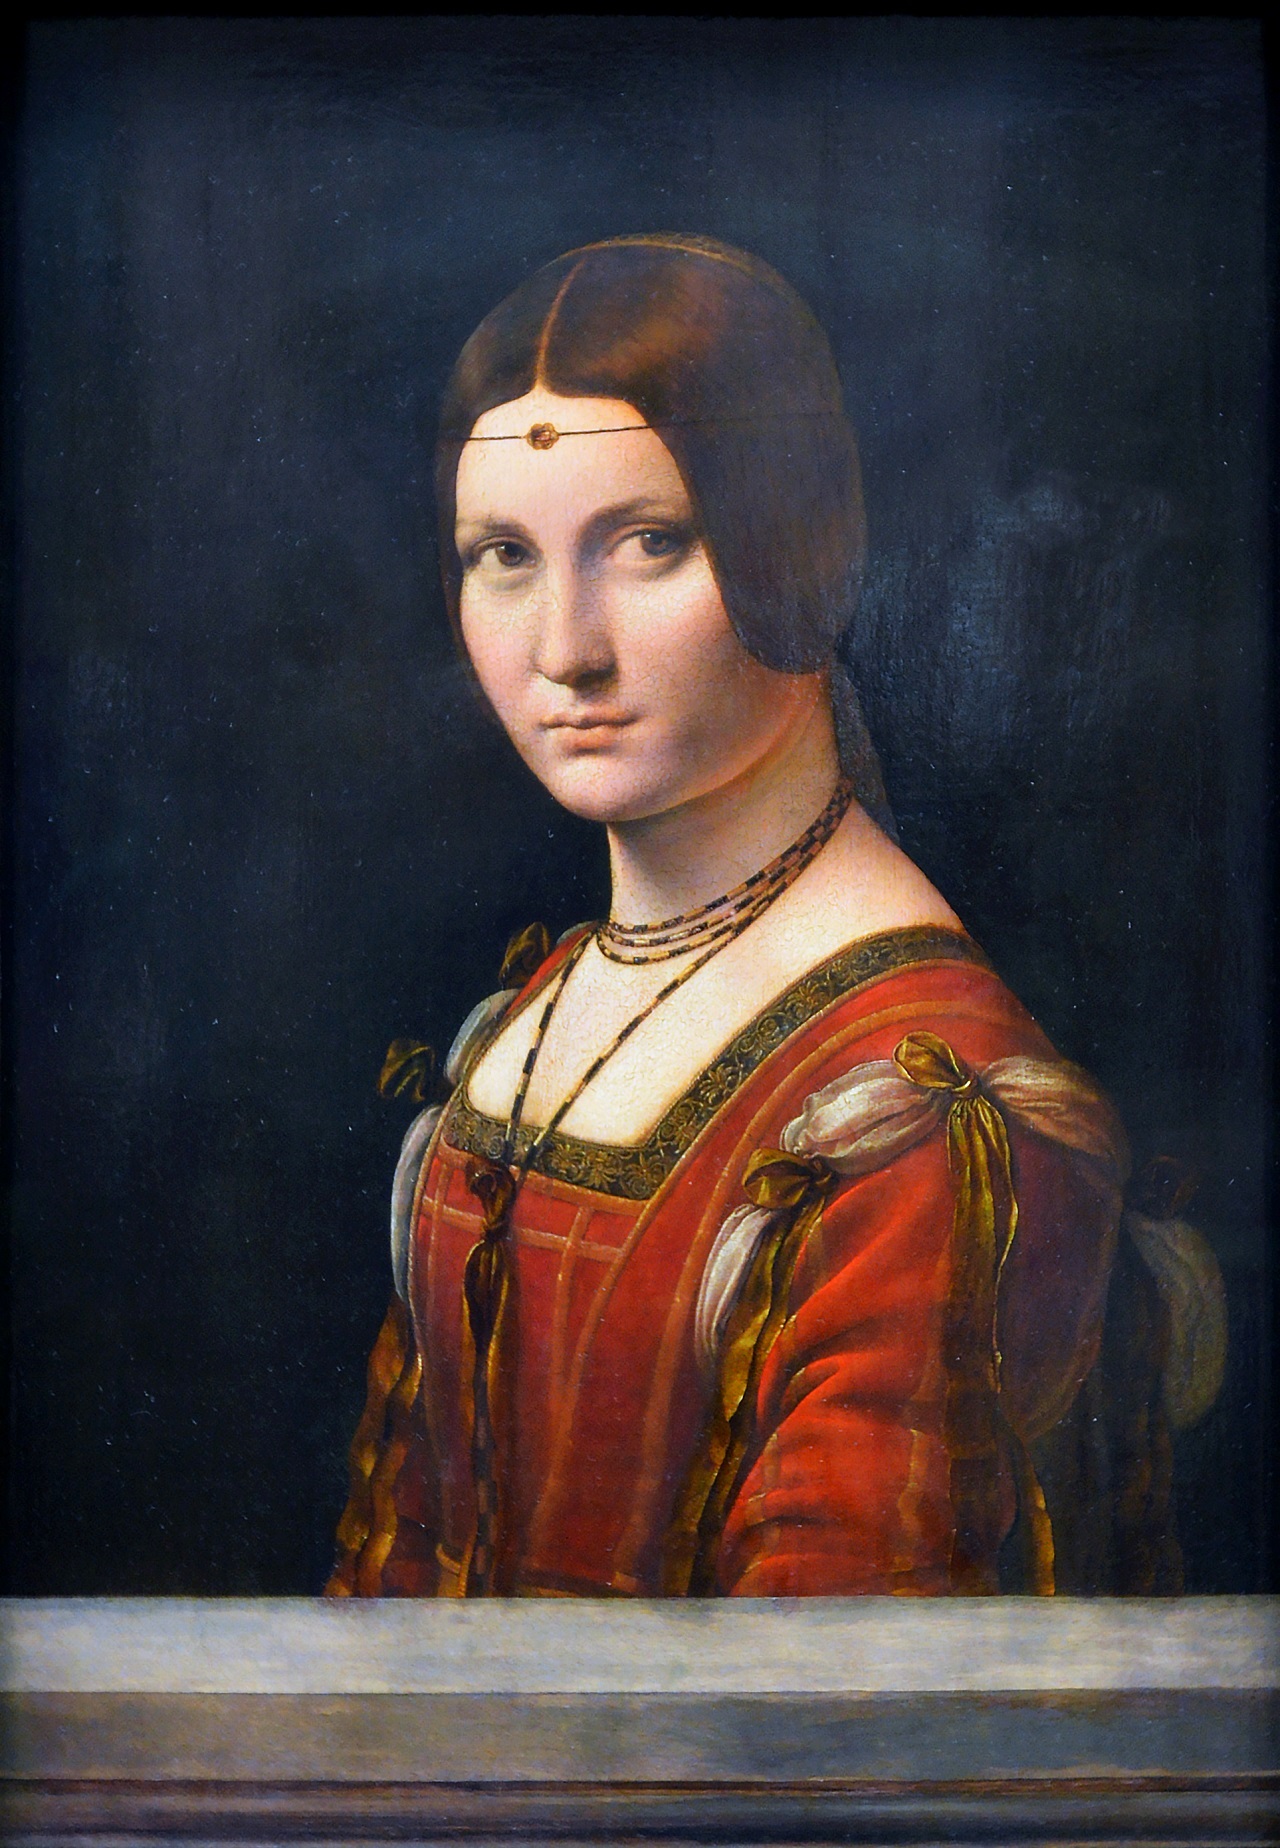 Leonardo da Vinci - Portrait of an Unknown Woman. La Belle Ferroniere 1490